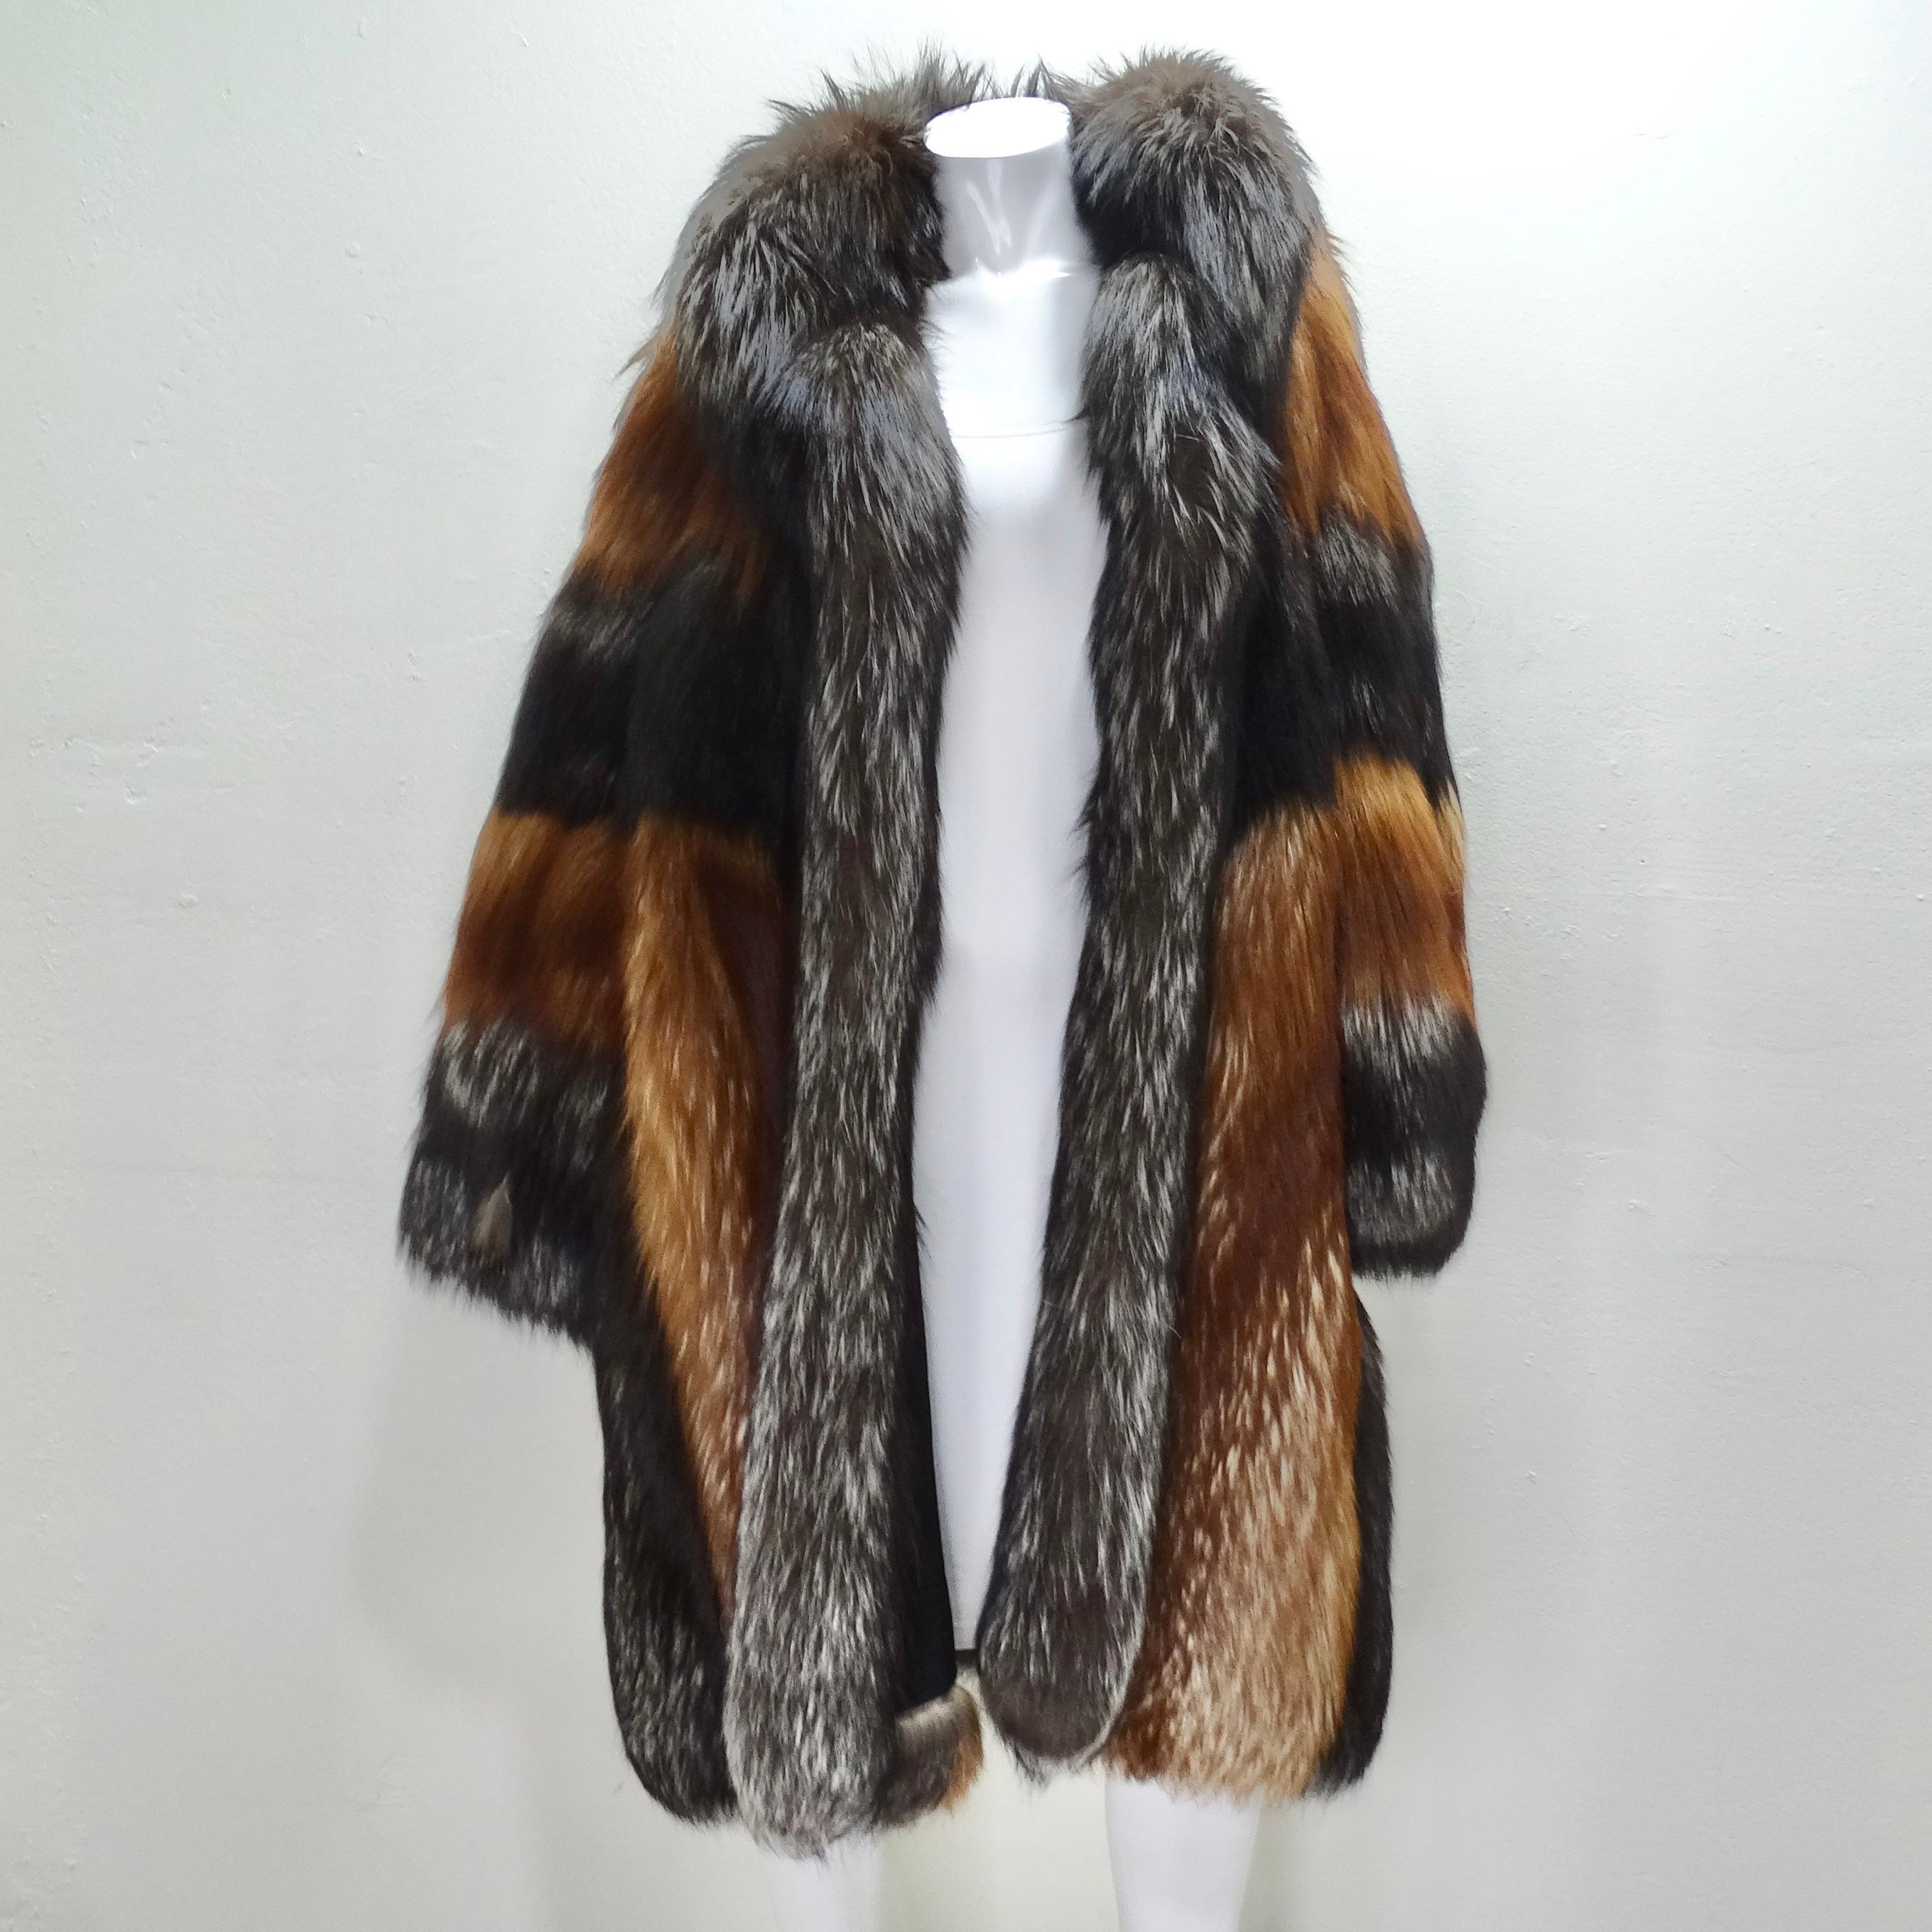 Mettez la main sur ce manteau de fourrure de renard Christian Dior des années 1970, qui est à couper le souffle ! Le manteau de fourrure classique le plus luxueux et le plus spectaculaire dans une fourrure brune contrastée qui attire le regard. De